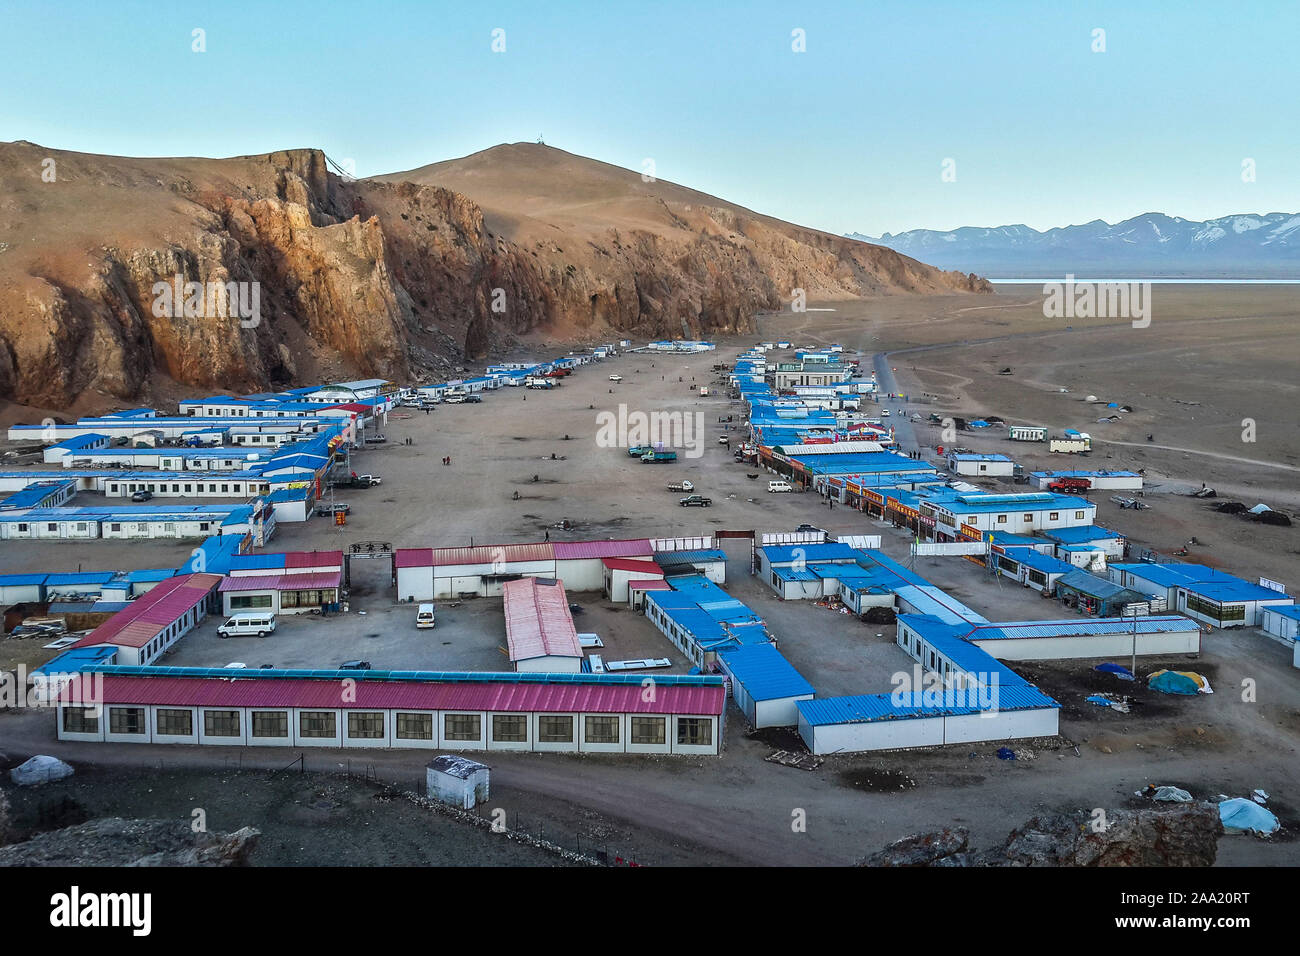 Les conteneurs comme hébergement pour les touristes et pèlerins au Lac Namtso, un saint salt lake dans le Tibet. Pour les 'tibétain est Namtso:Heavenly Lake'. Banque D'Images